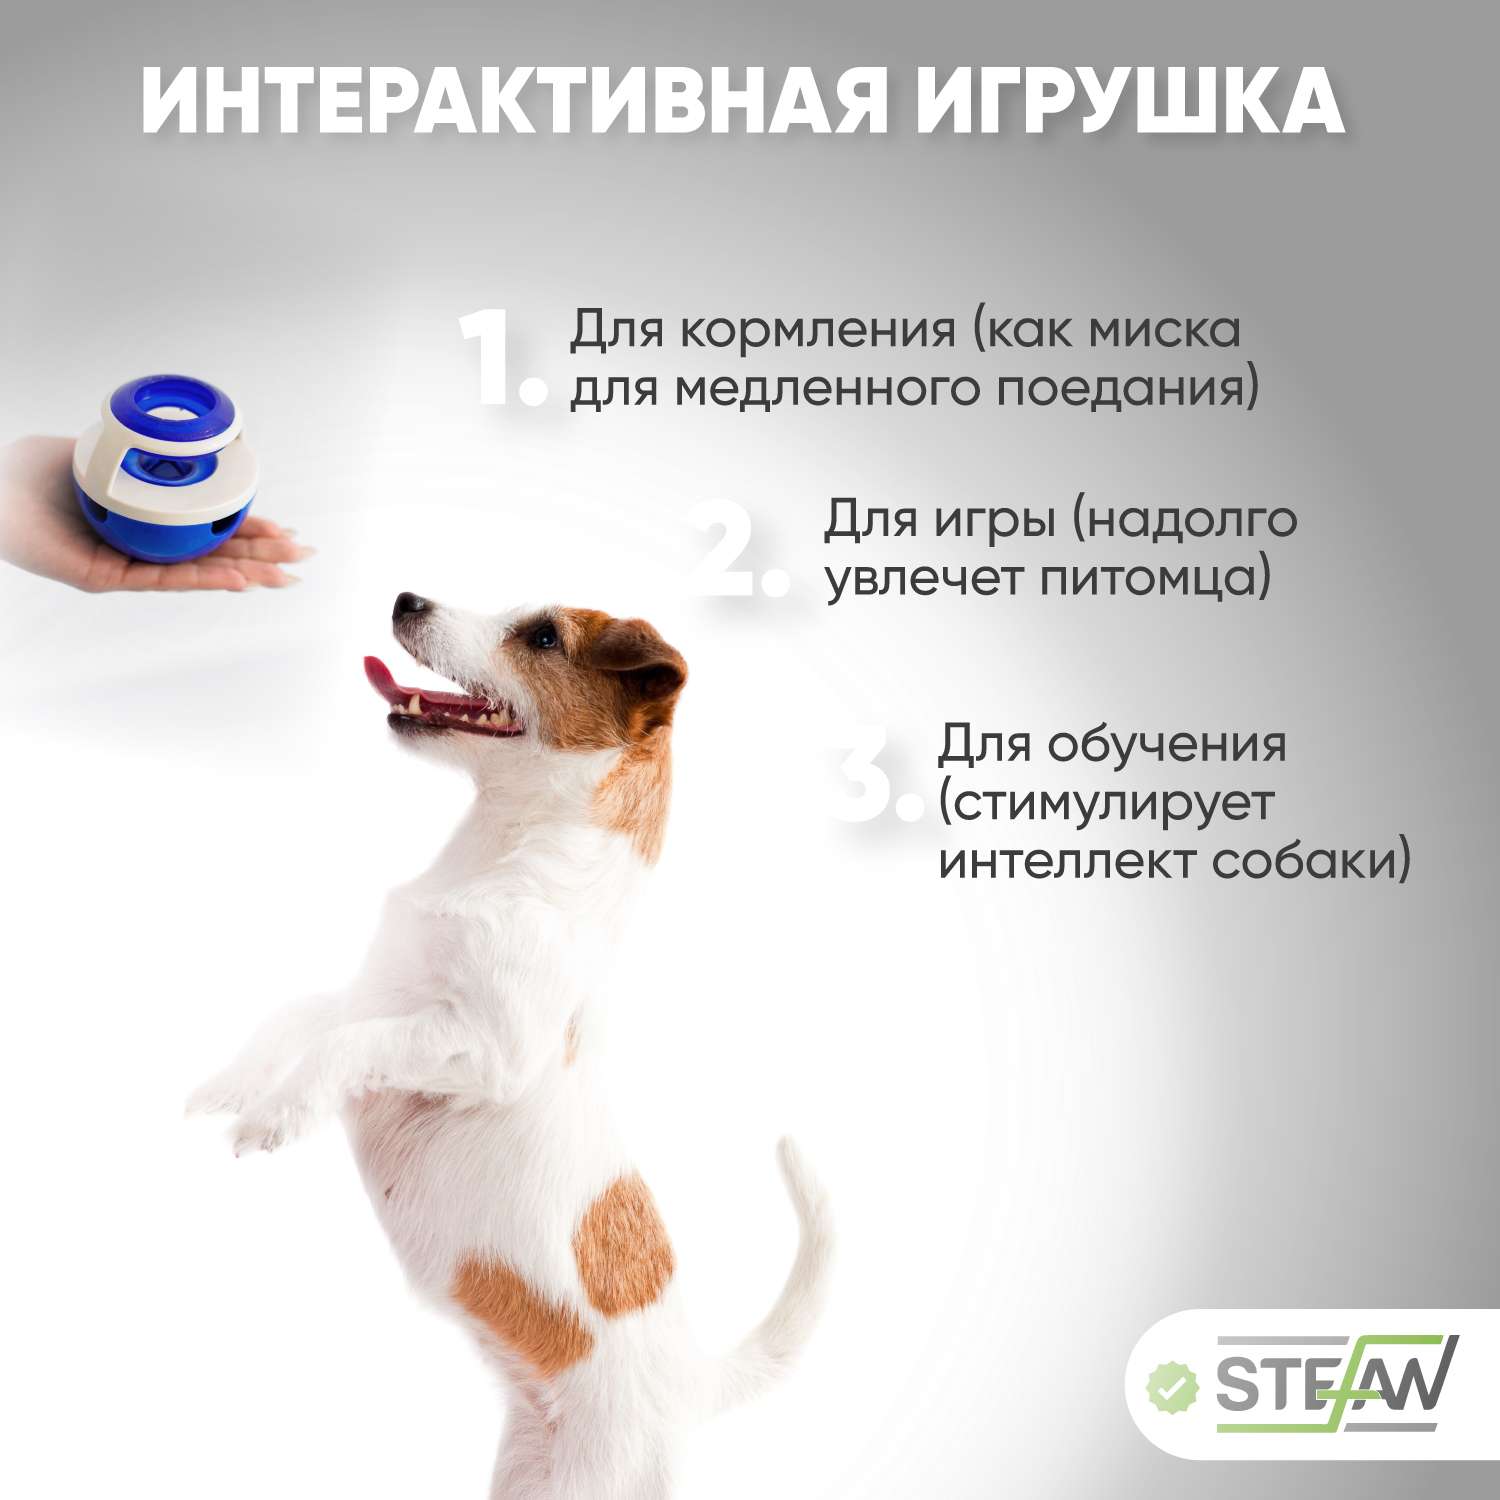 Игрушка для животных Stefan Интерактивная Неваляшка для медленного поедания корма - фото 3